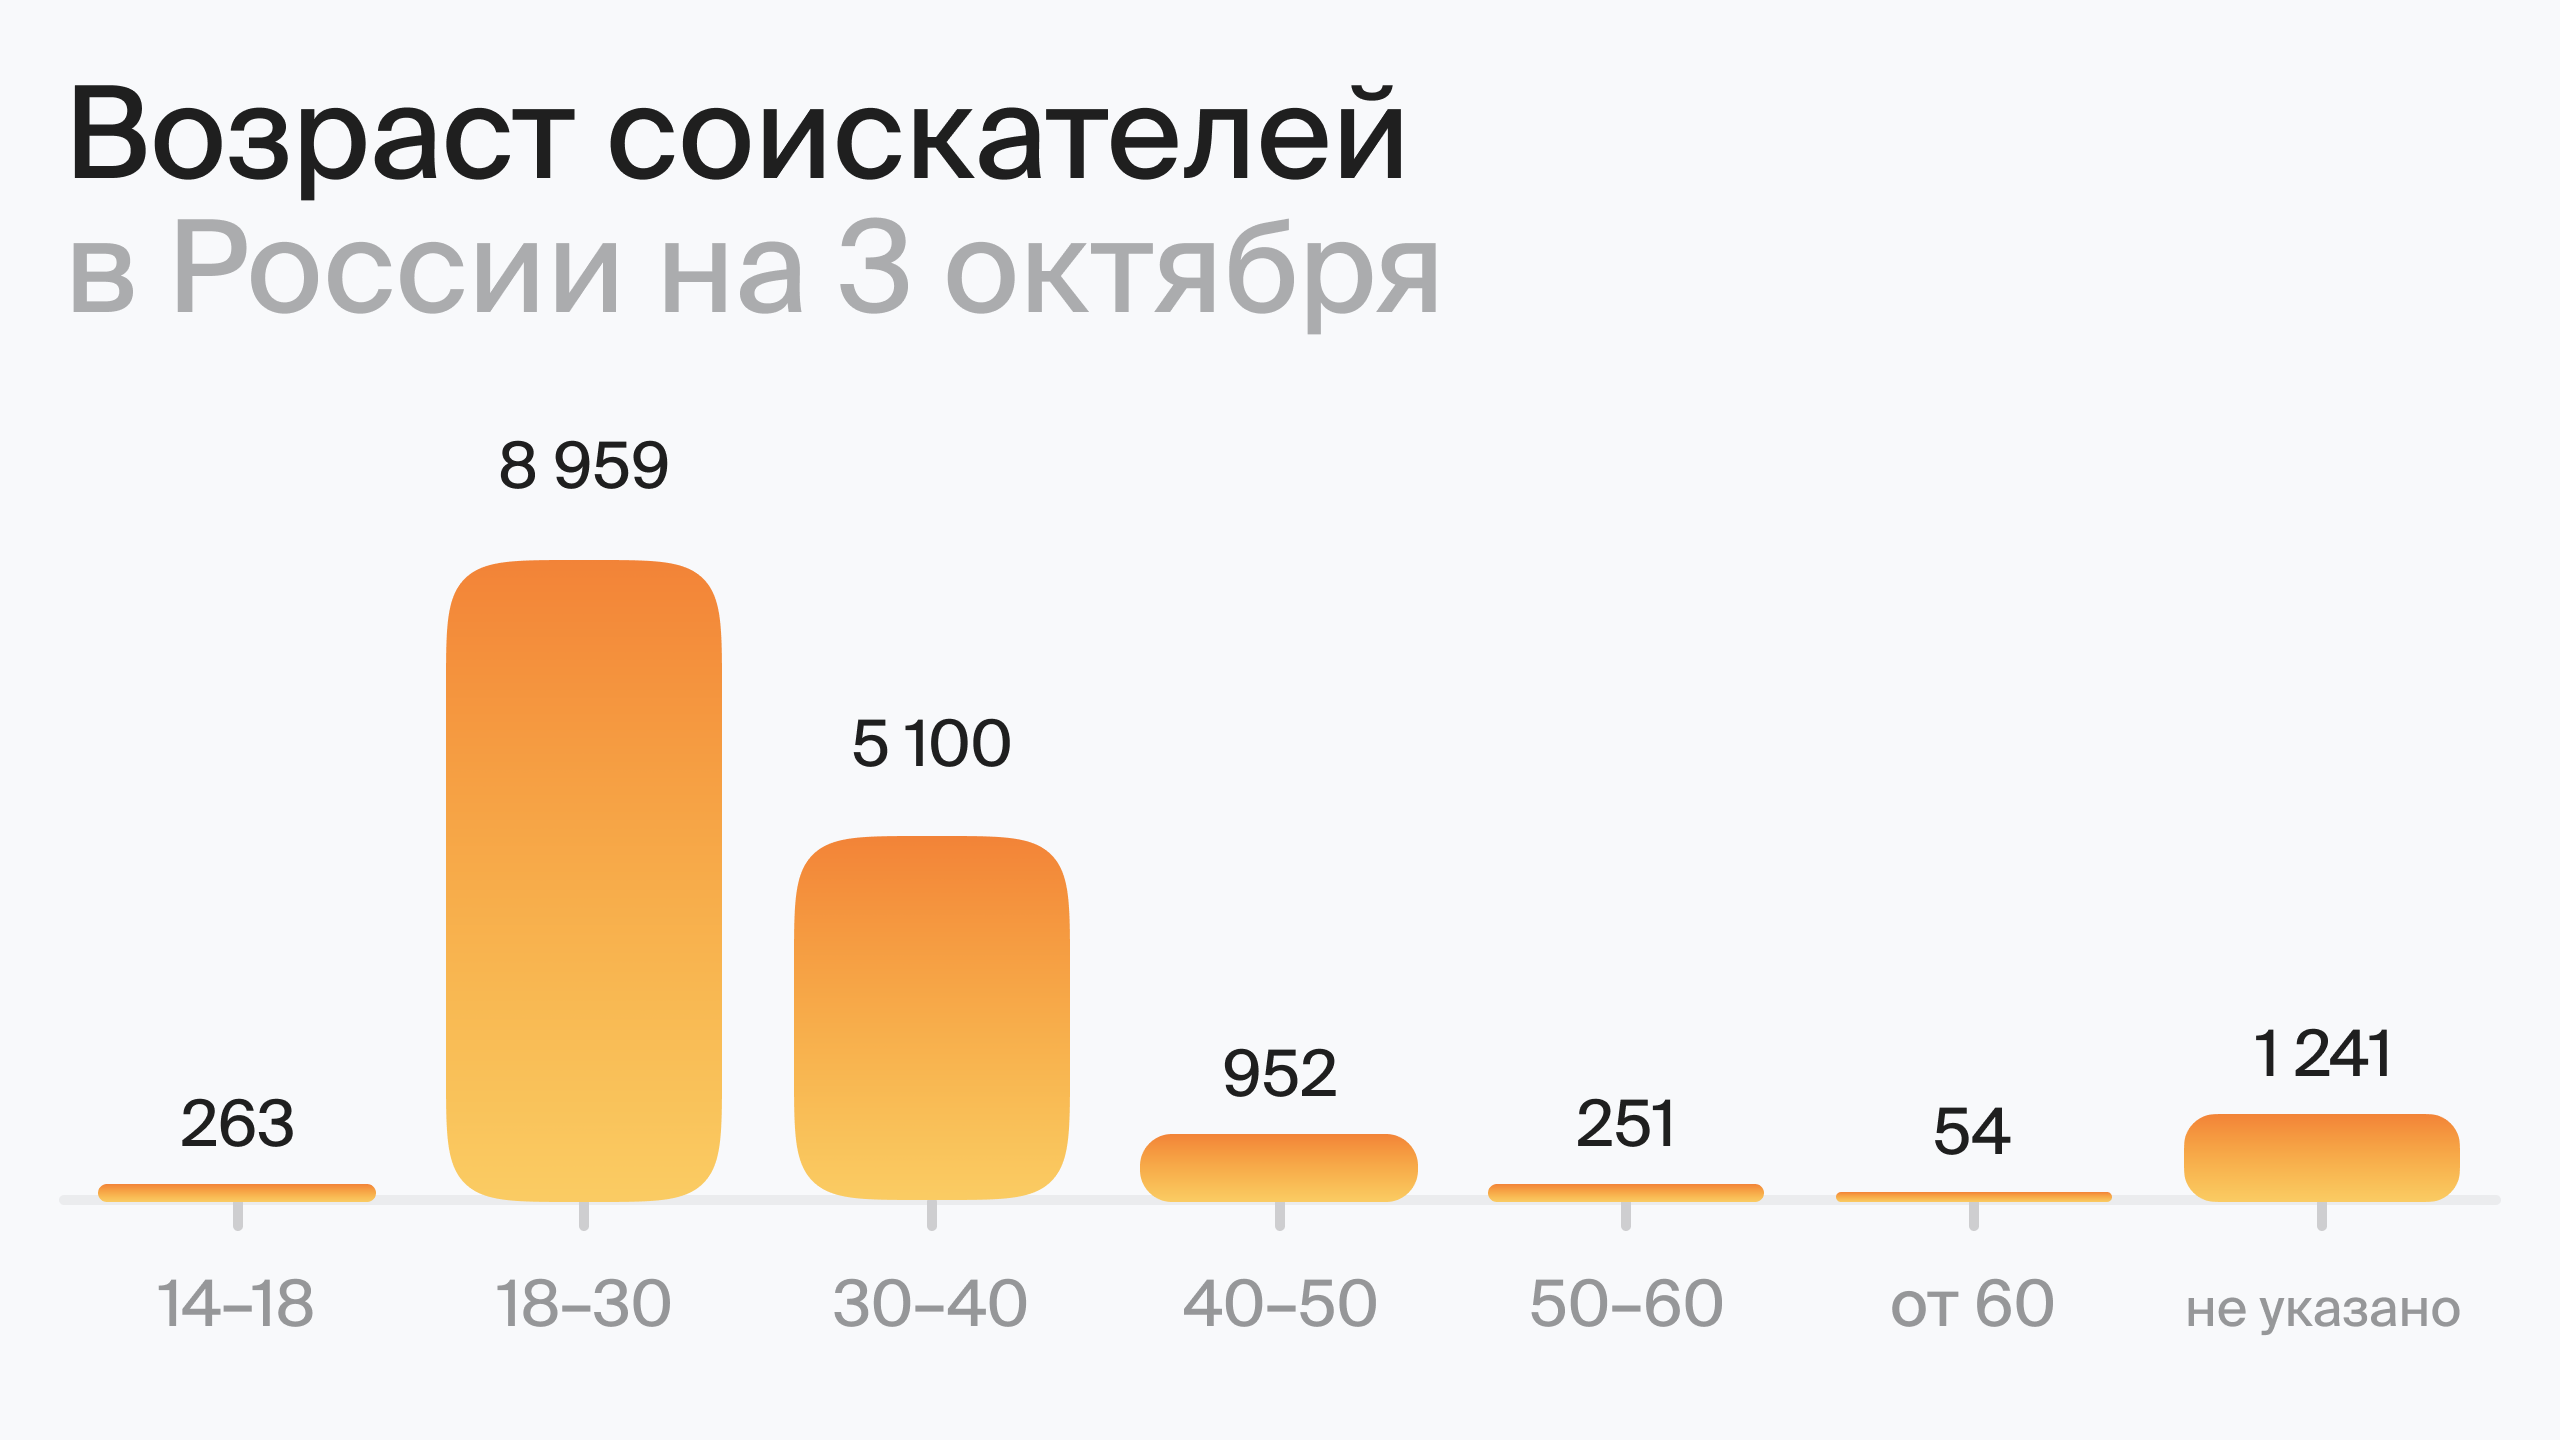 Возраст соискателей в России на 3 октября (по данным hh.ru)